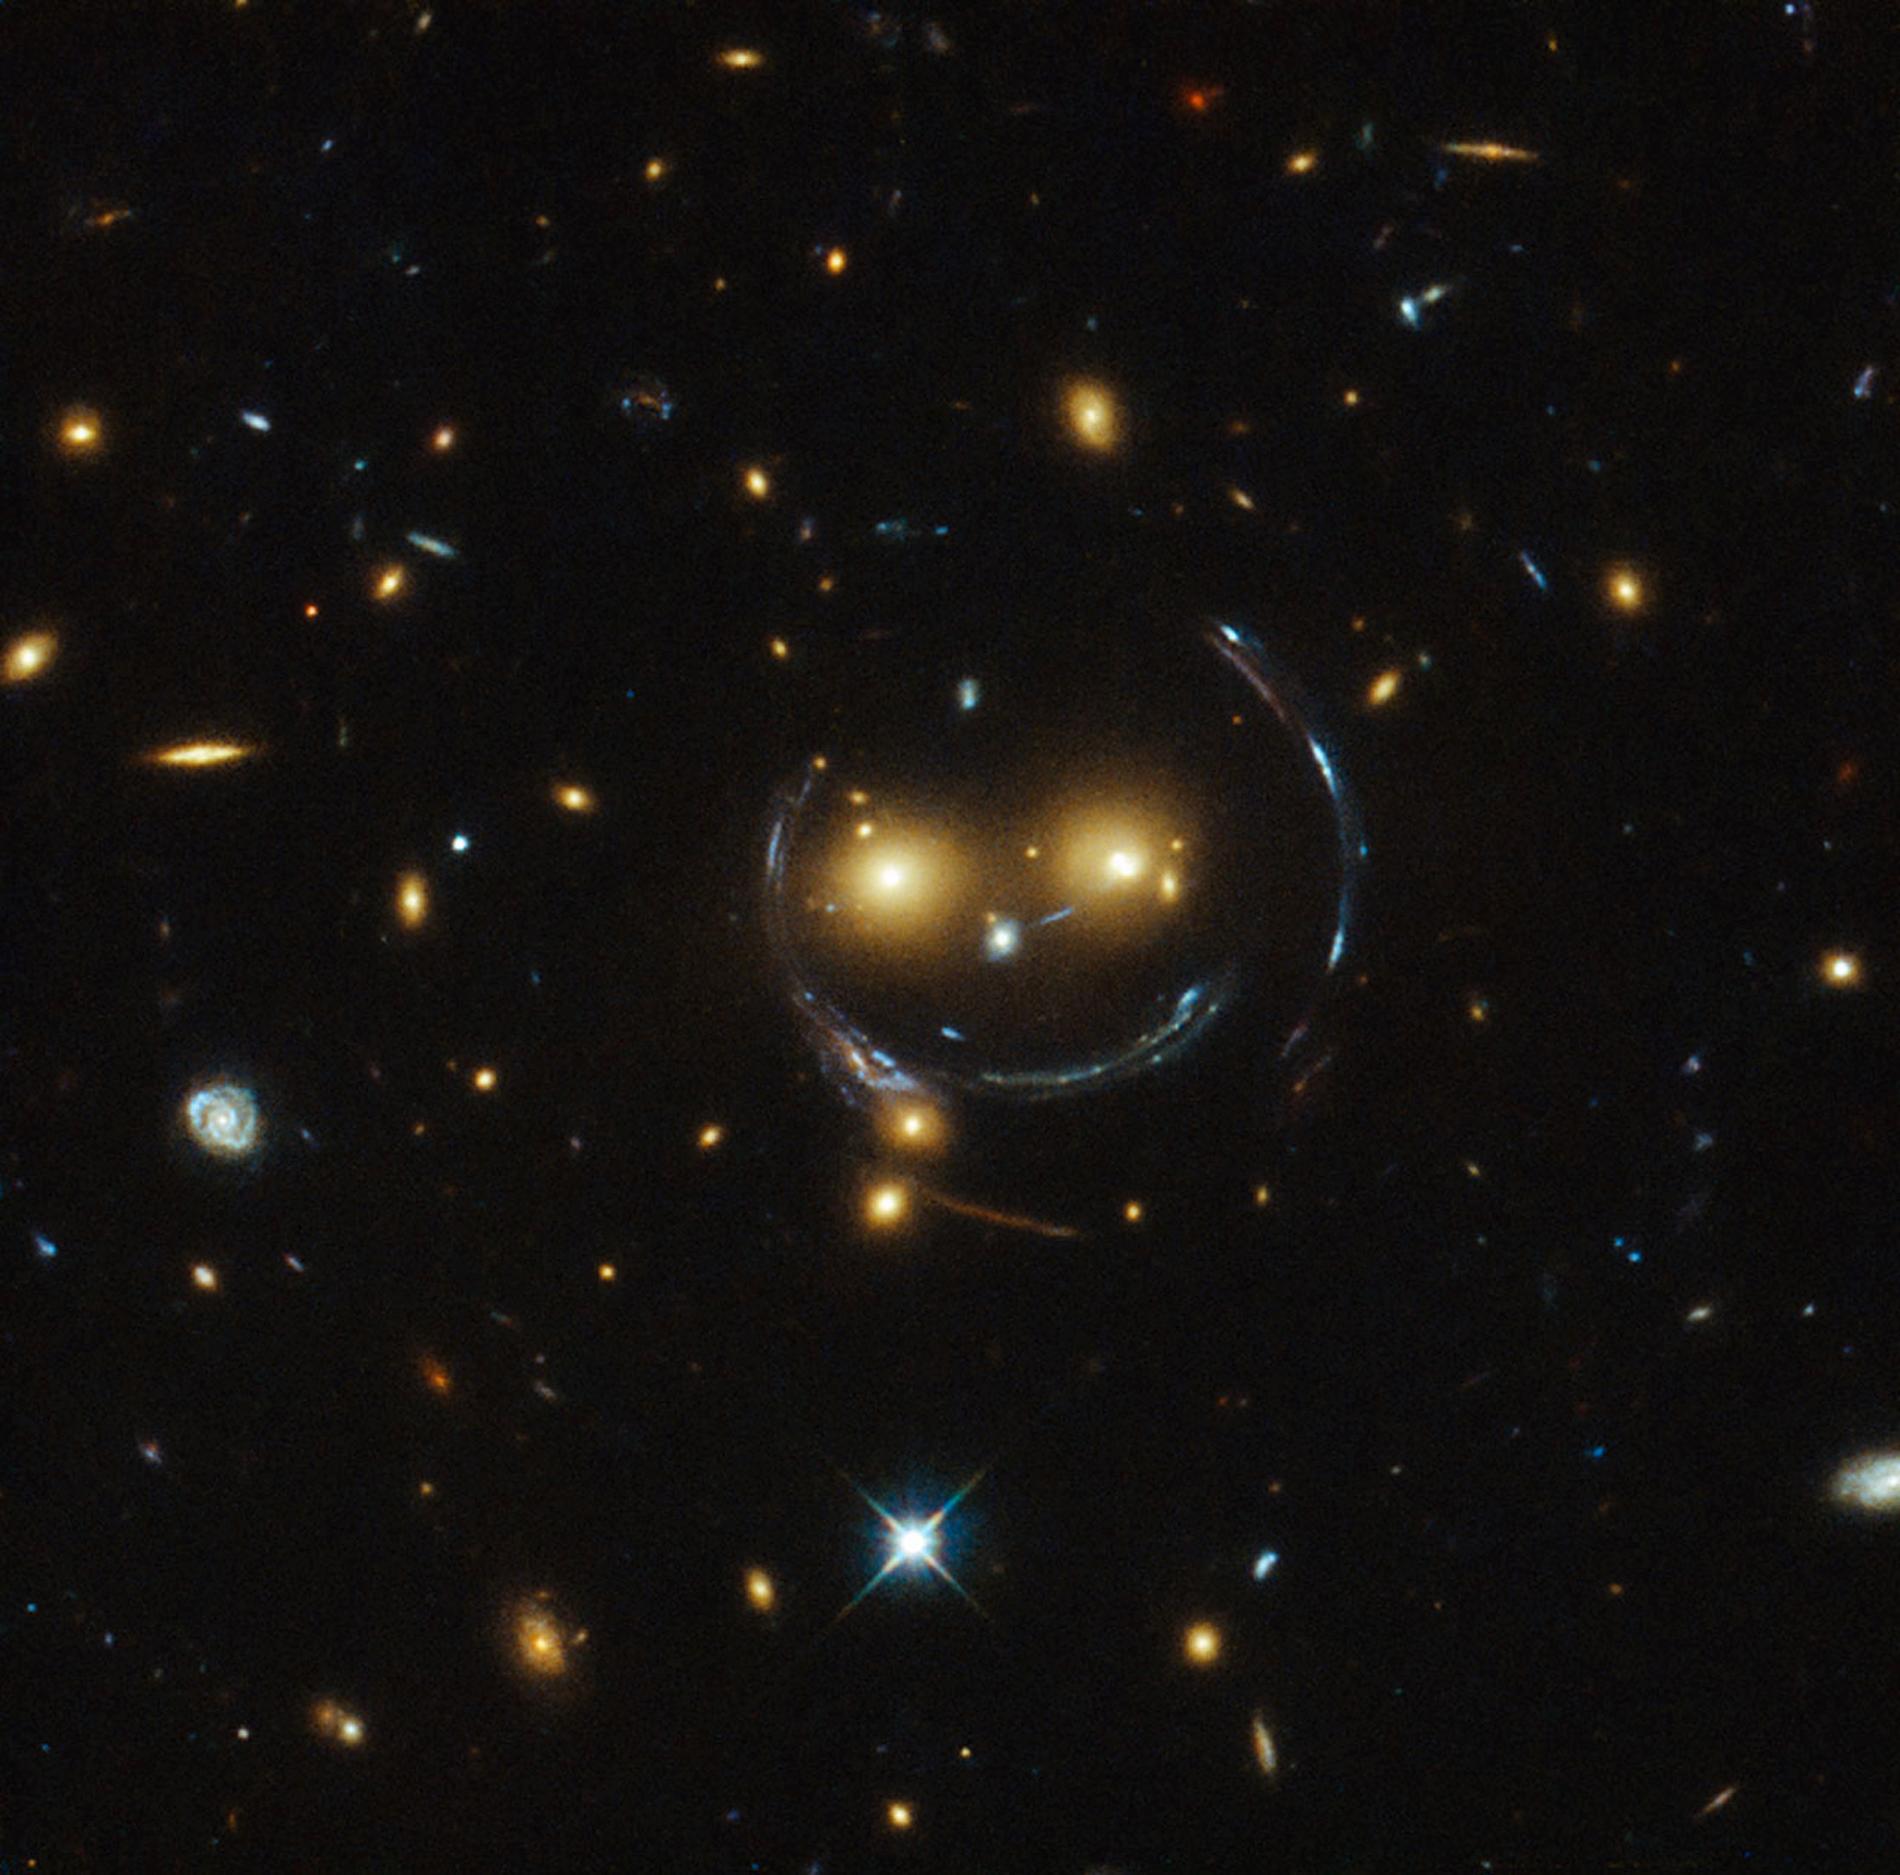 Nu släpper Nasa en ny bild av rymden som kan göra uttrycket glad som en lax förlegat. Här är nämligen galax-fotot som visar universum från dess lyckligaste sida.
Den muntra rymdframställningen som kommer från Hubble-teleskopet visar ett kluster av galaxer som går under namnet SDSS J1038+4849, enligt Nasa.